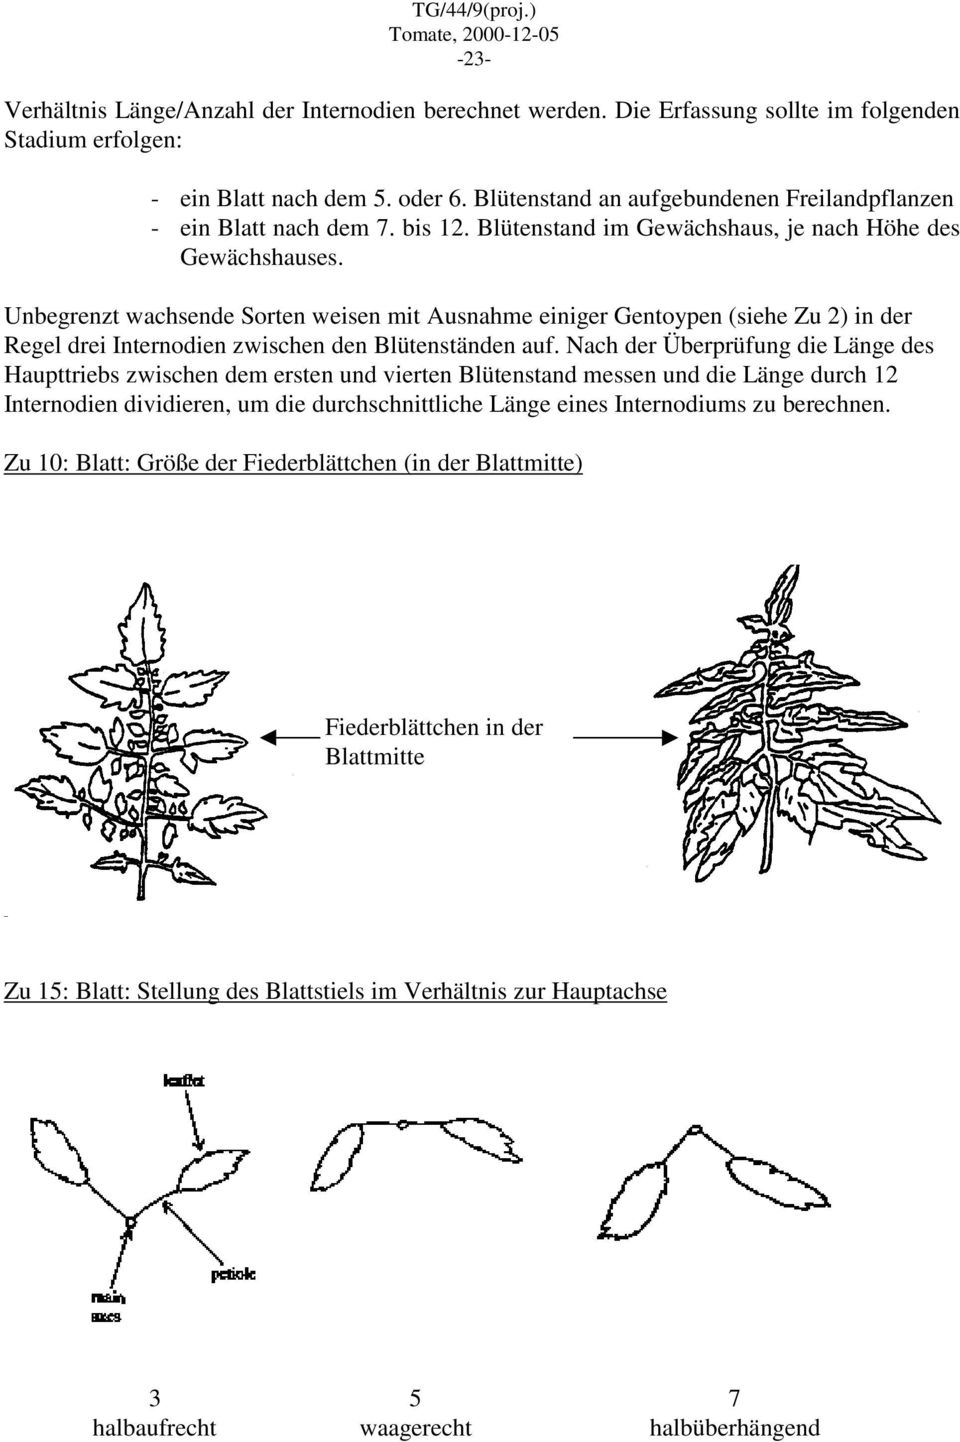 Unbegrenzt wachsende Sorten weisen mit Ausnahme einiger Gentoypen (siehe Zu 2) in der Regel drei Internodien zwischen den Blütenständen auf.